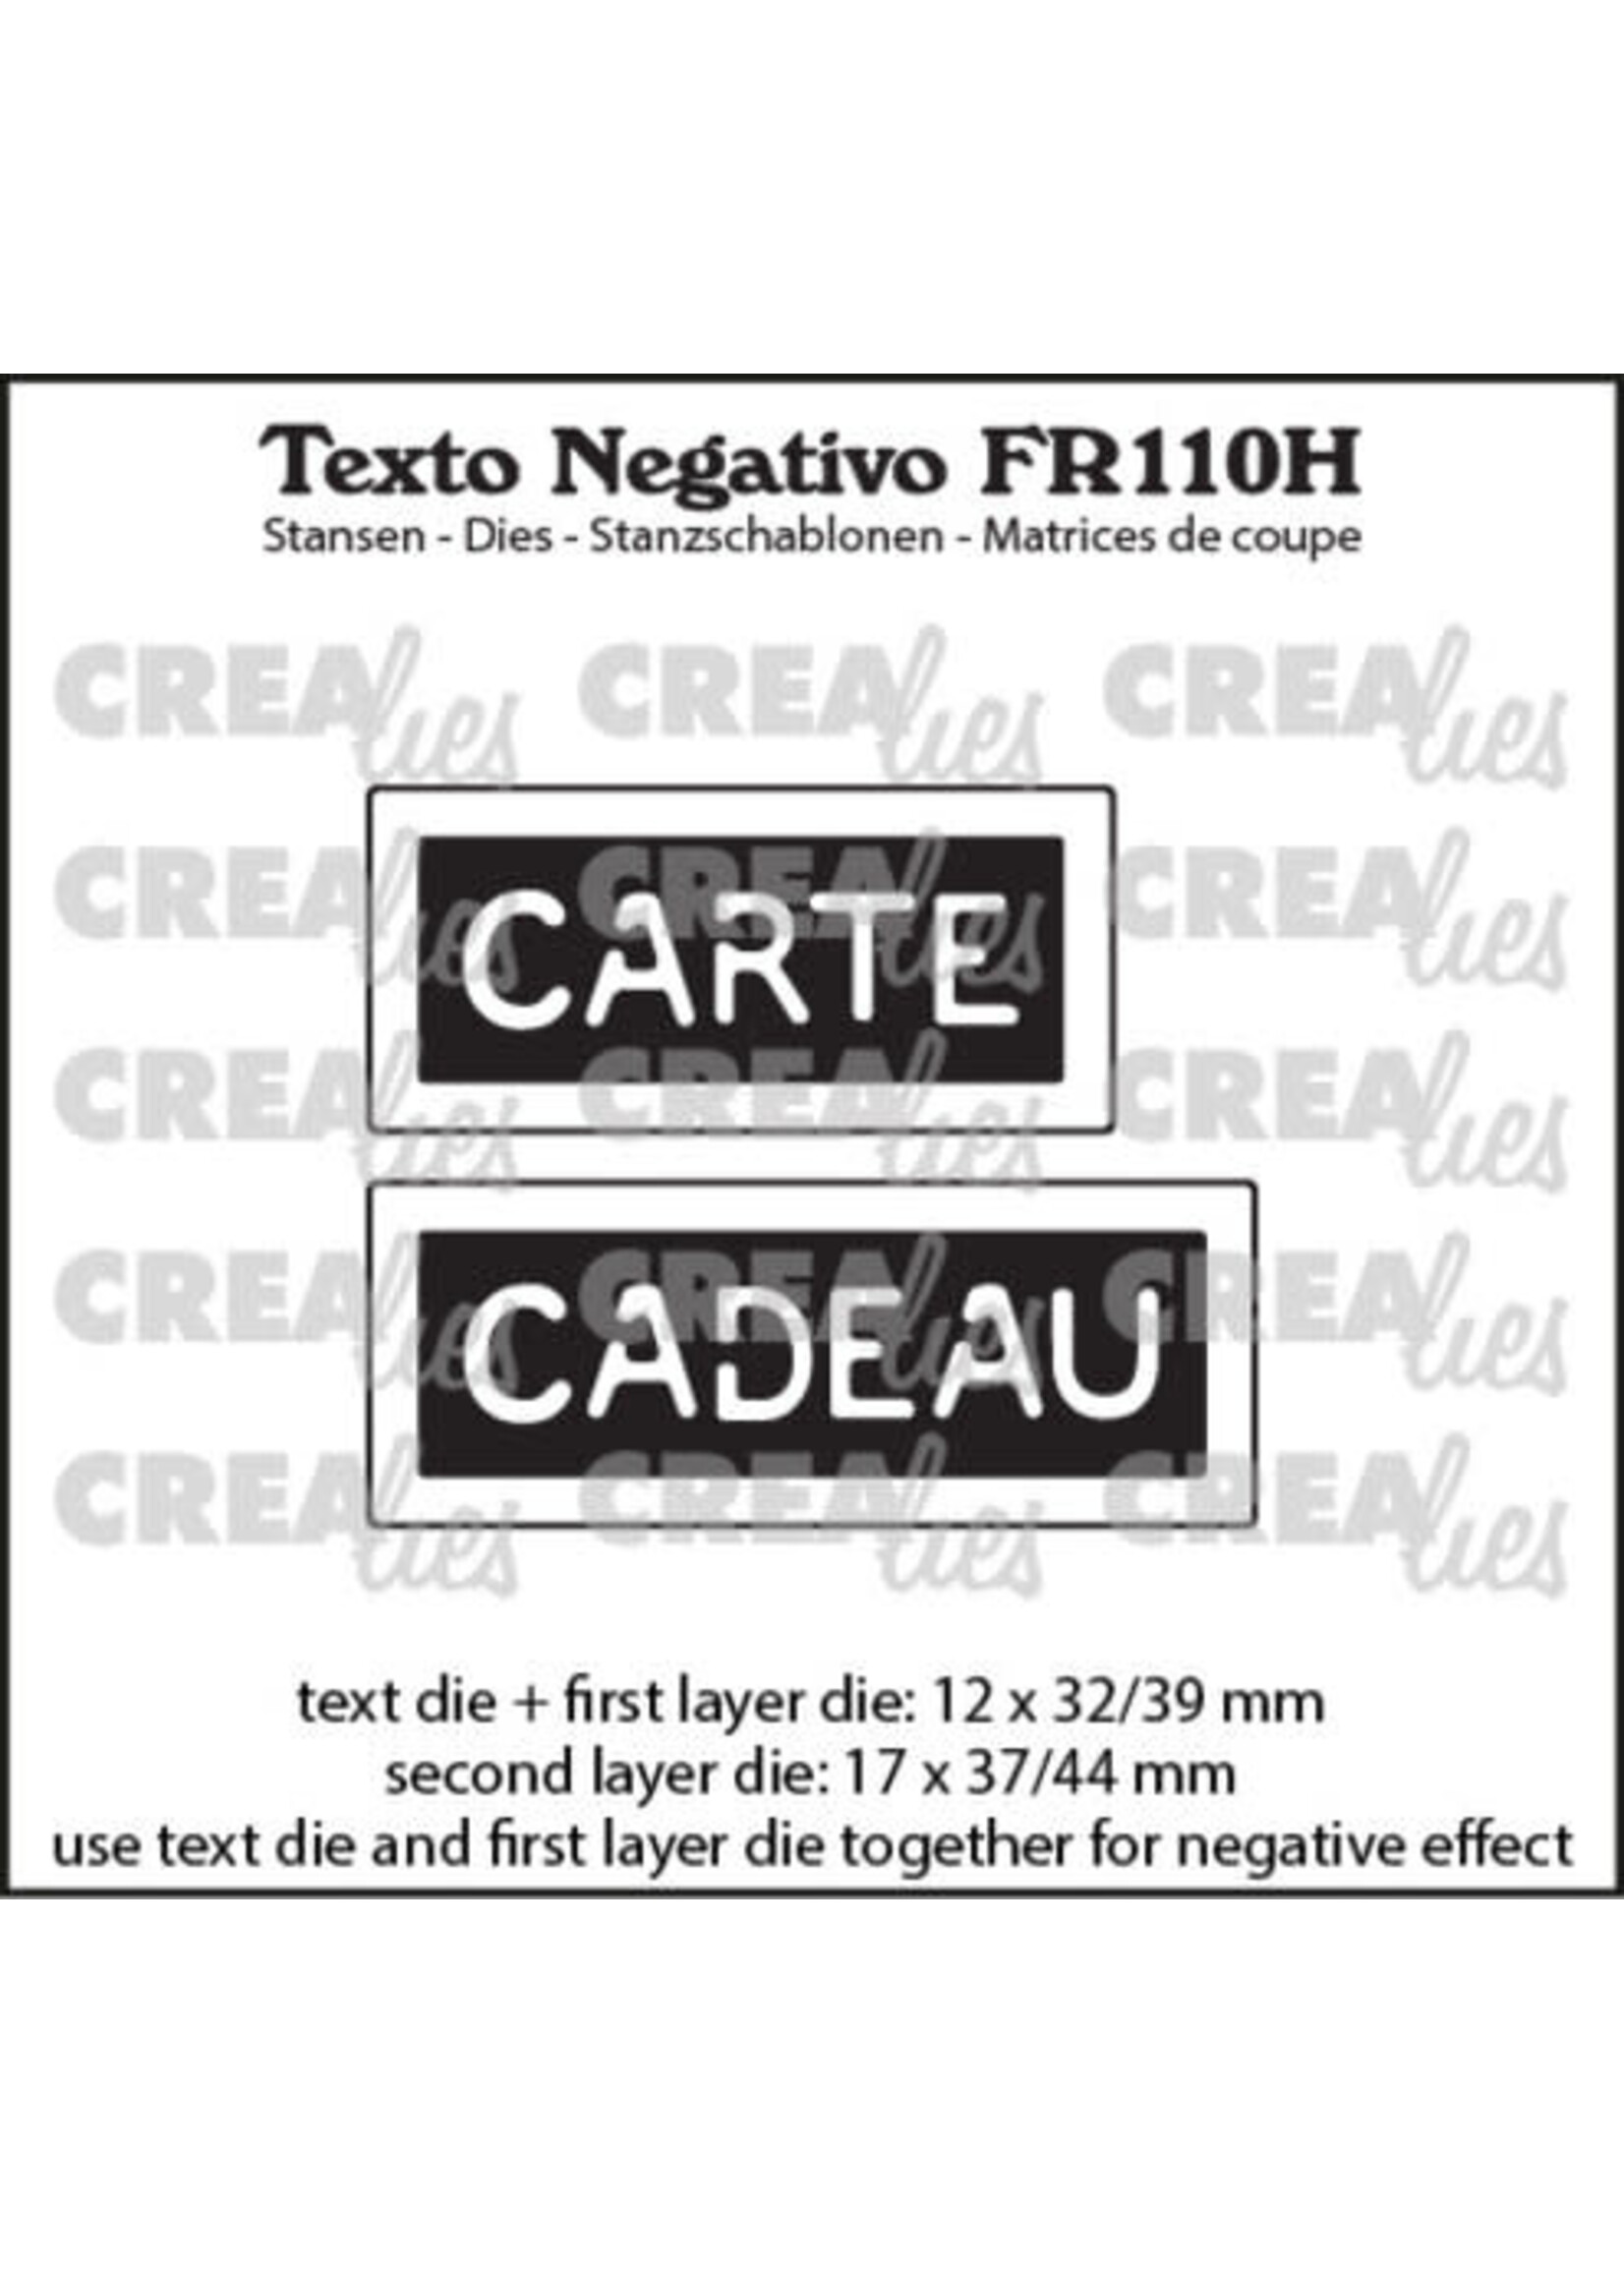 Texto Negativo Stansen French No. 110H Carte Cadeau (FR110H)